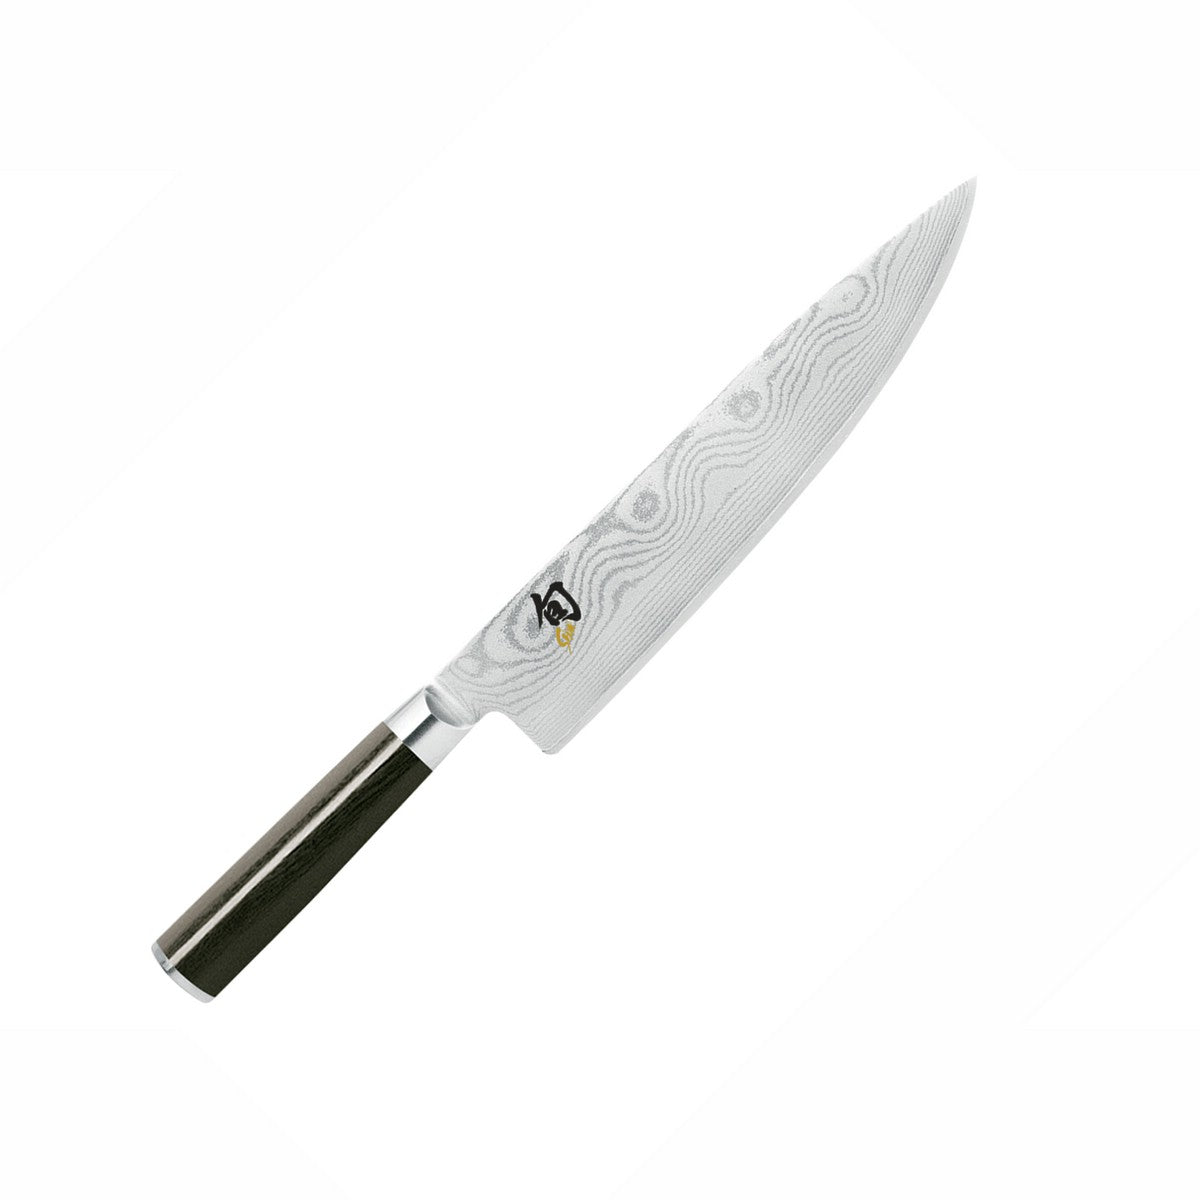 Sharpening a Shun : r/chefknives